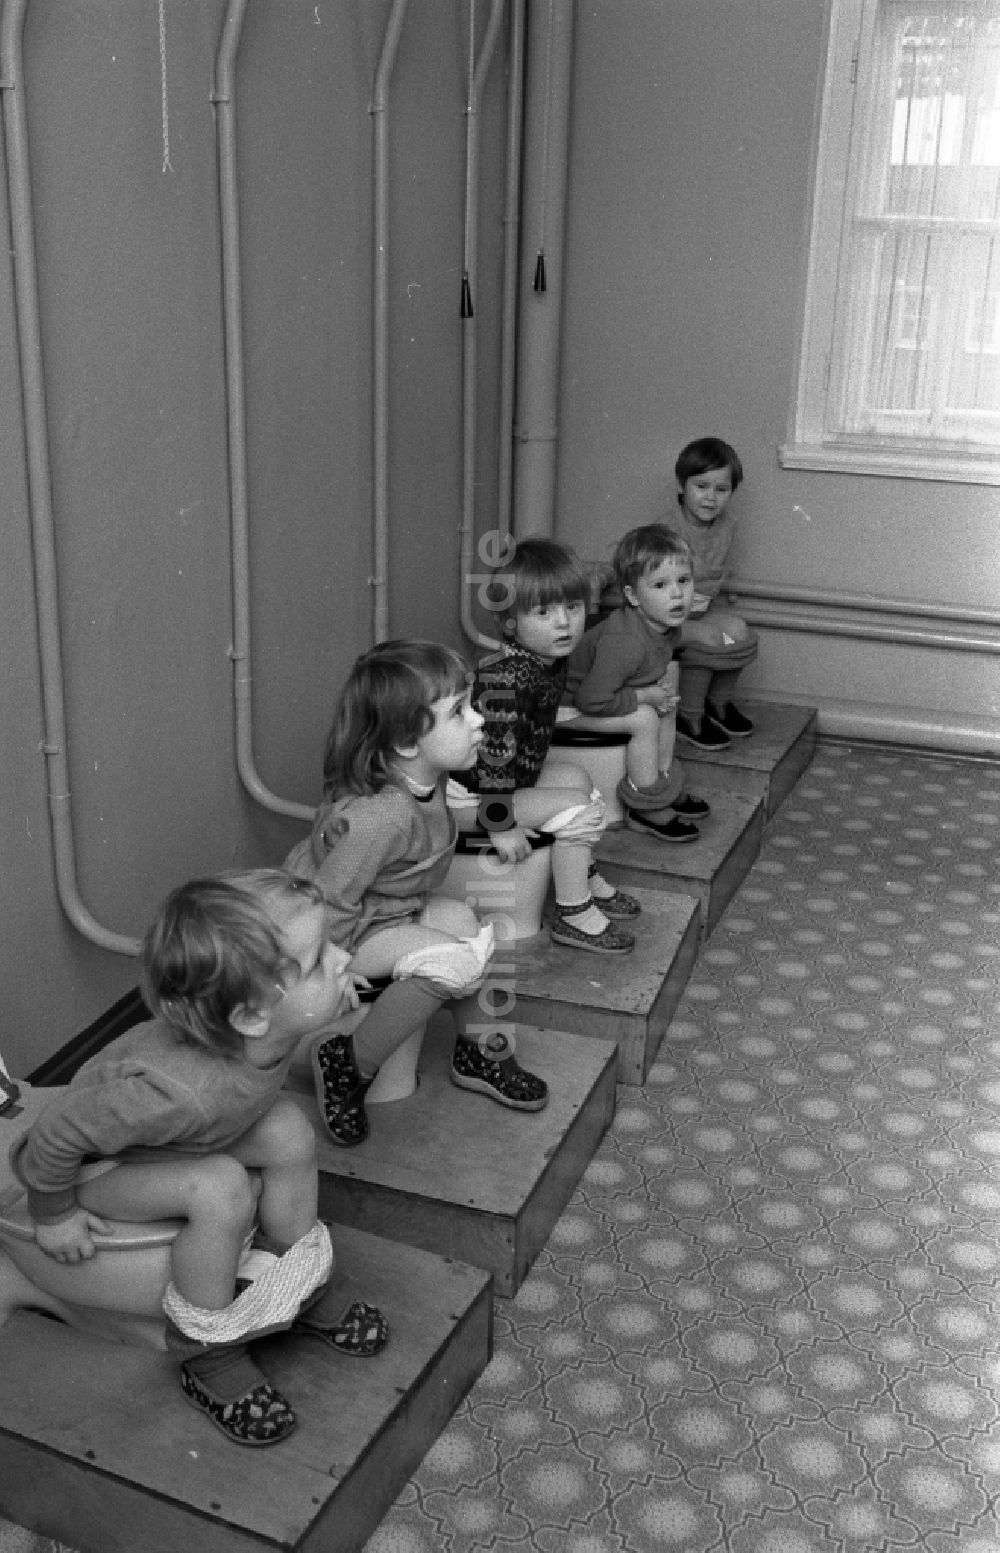 DDR-Bildarchiv: Berlin - Kindergartengruppe auf der Toilette in Berlin auf dem Gebiet der ehemaligen DDR, Deutsche Demokratische Republik